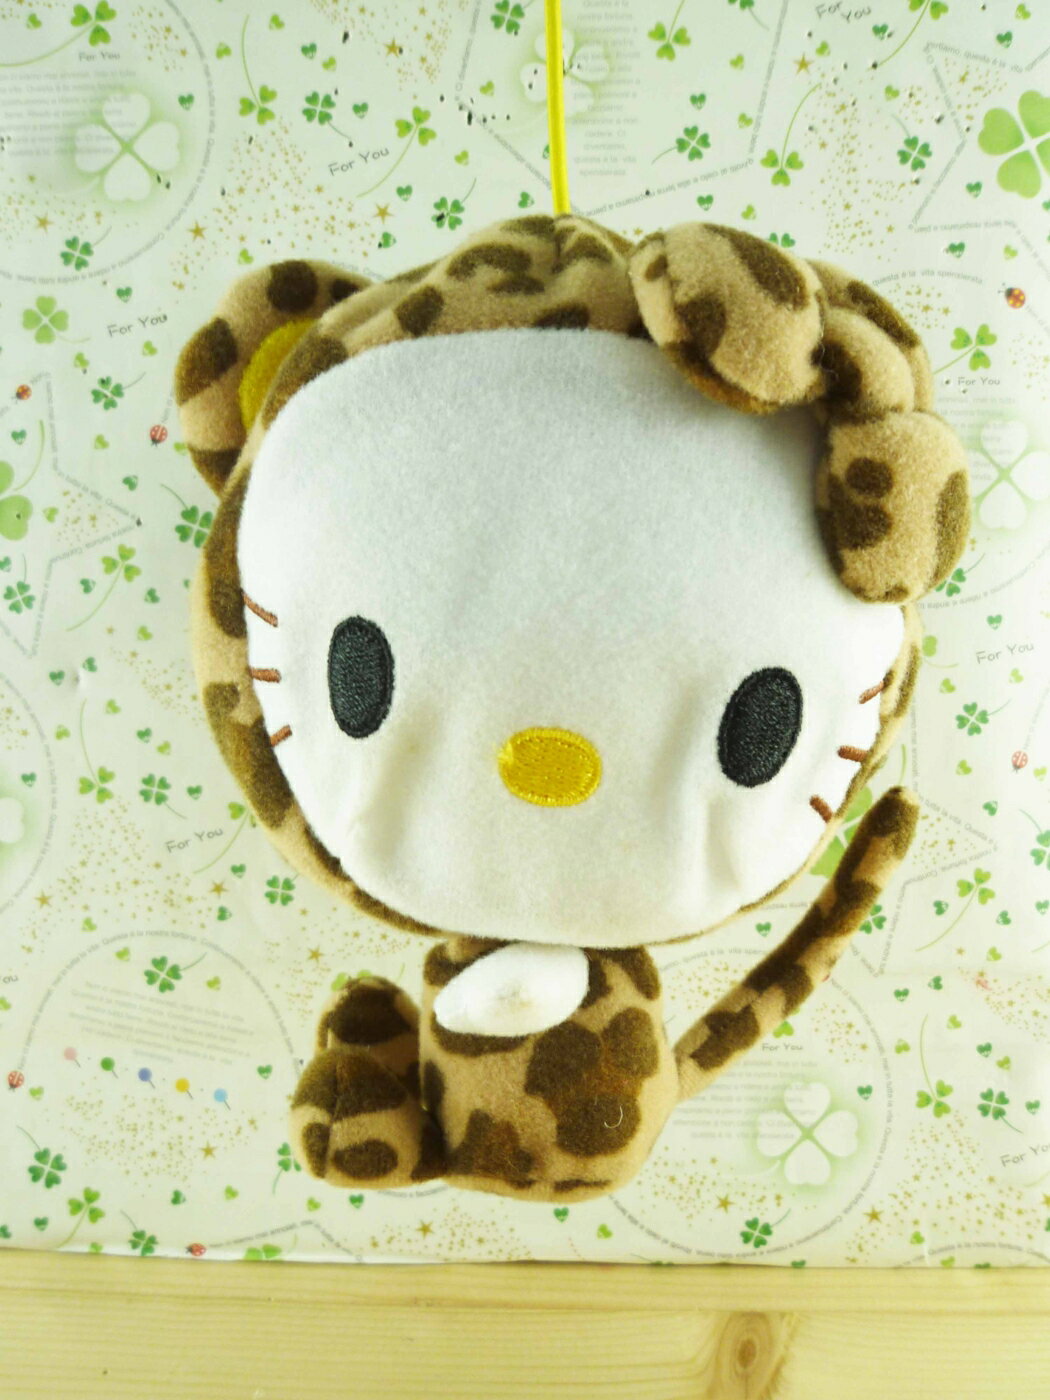 【震撼精品百貨】Hello Kitty 凱蒂貓 造型絨毛充氣球-米豹紋 震撼日式精品百貨